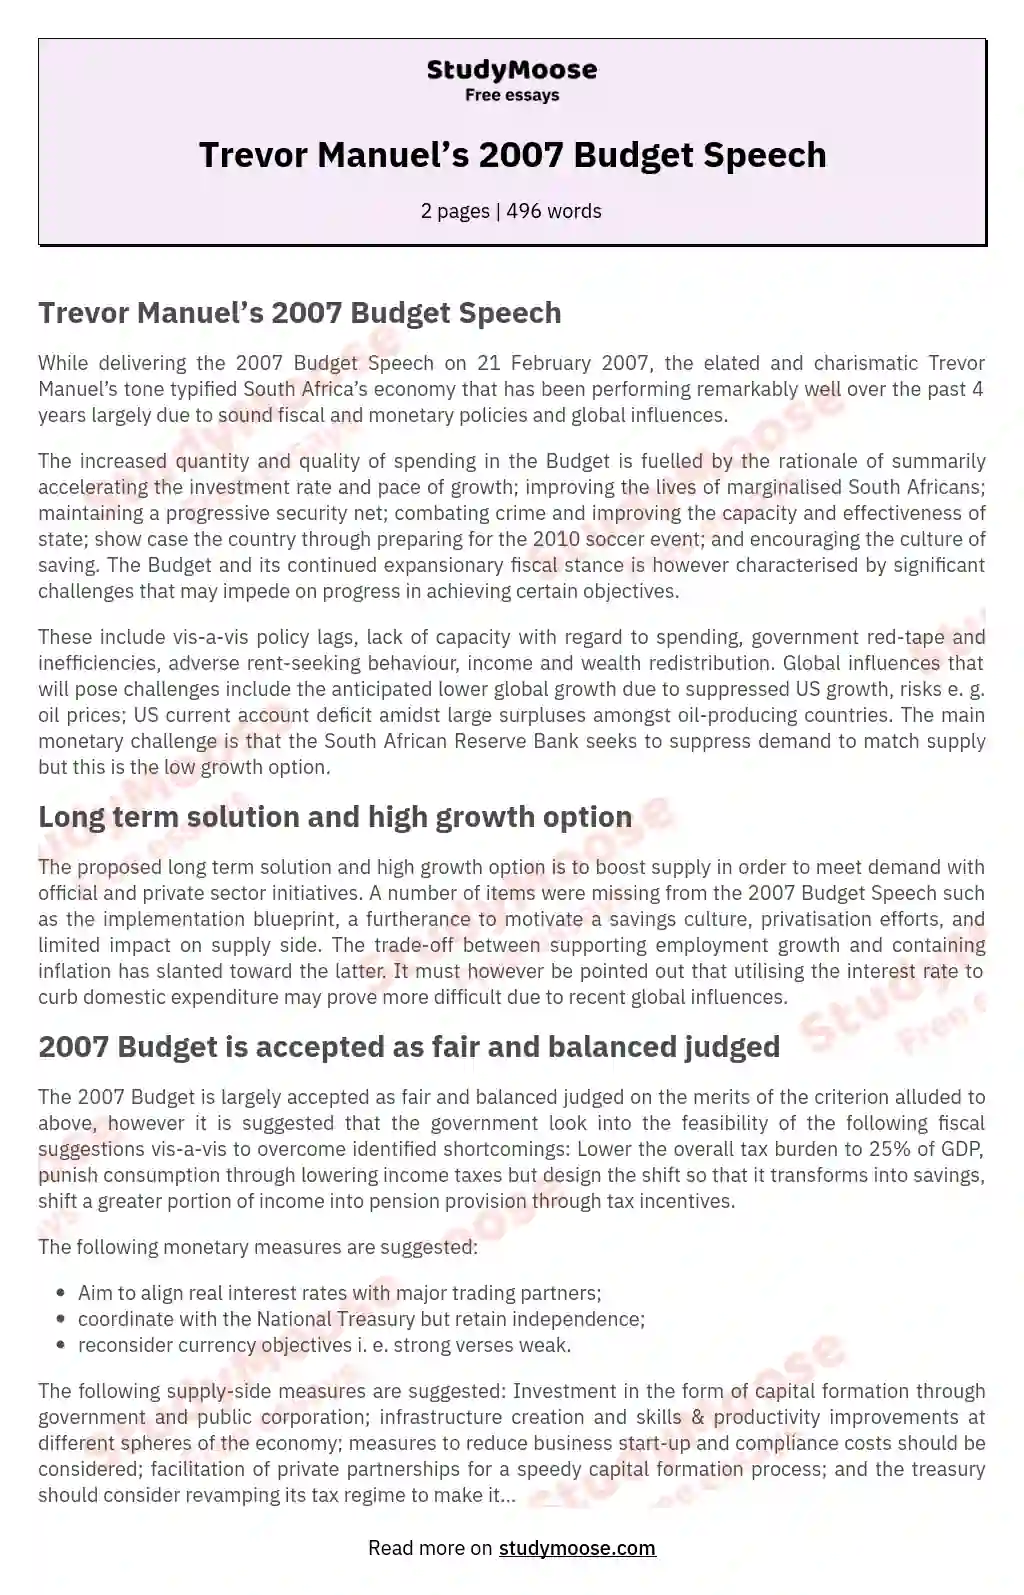 Trevor Manuel’s 2007 Budget Speech essay